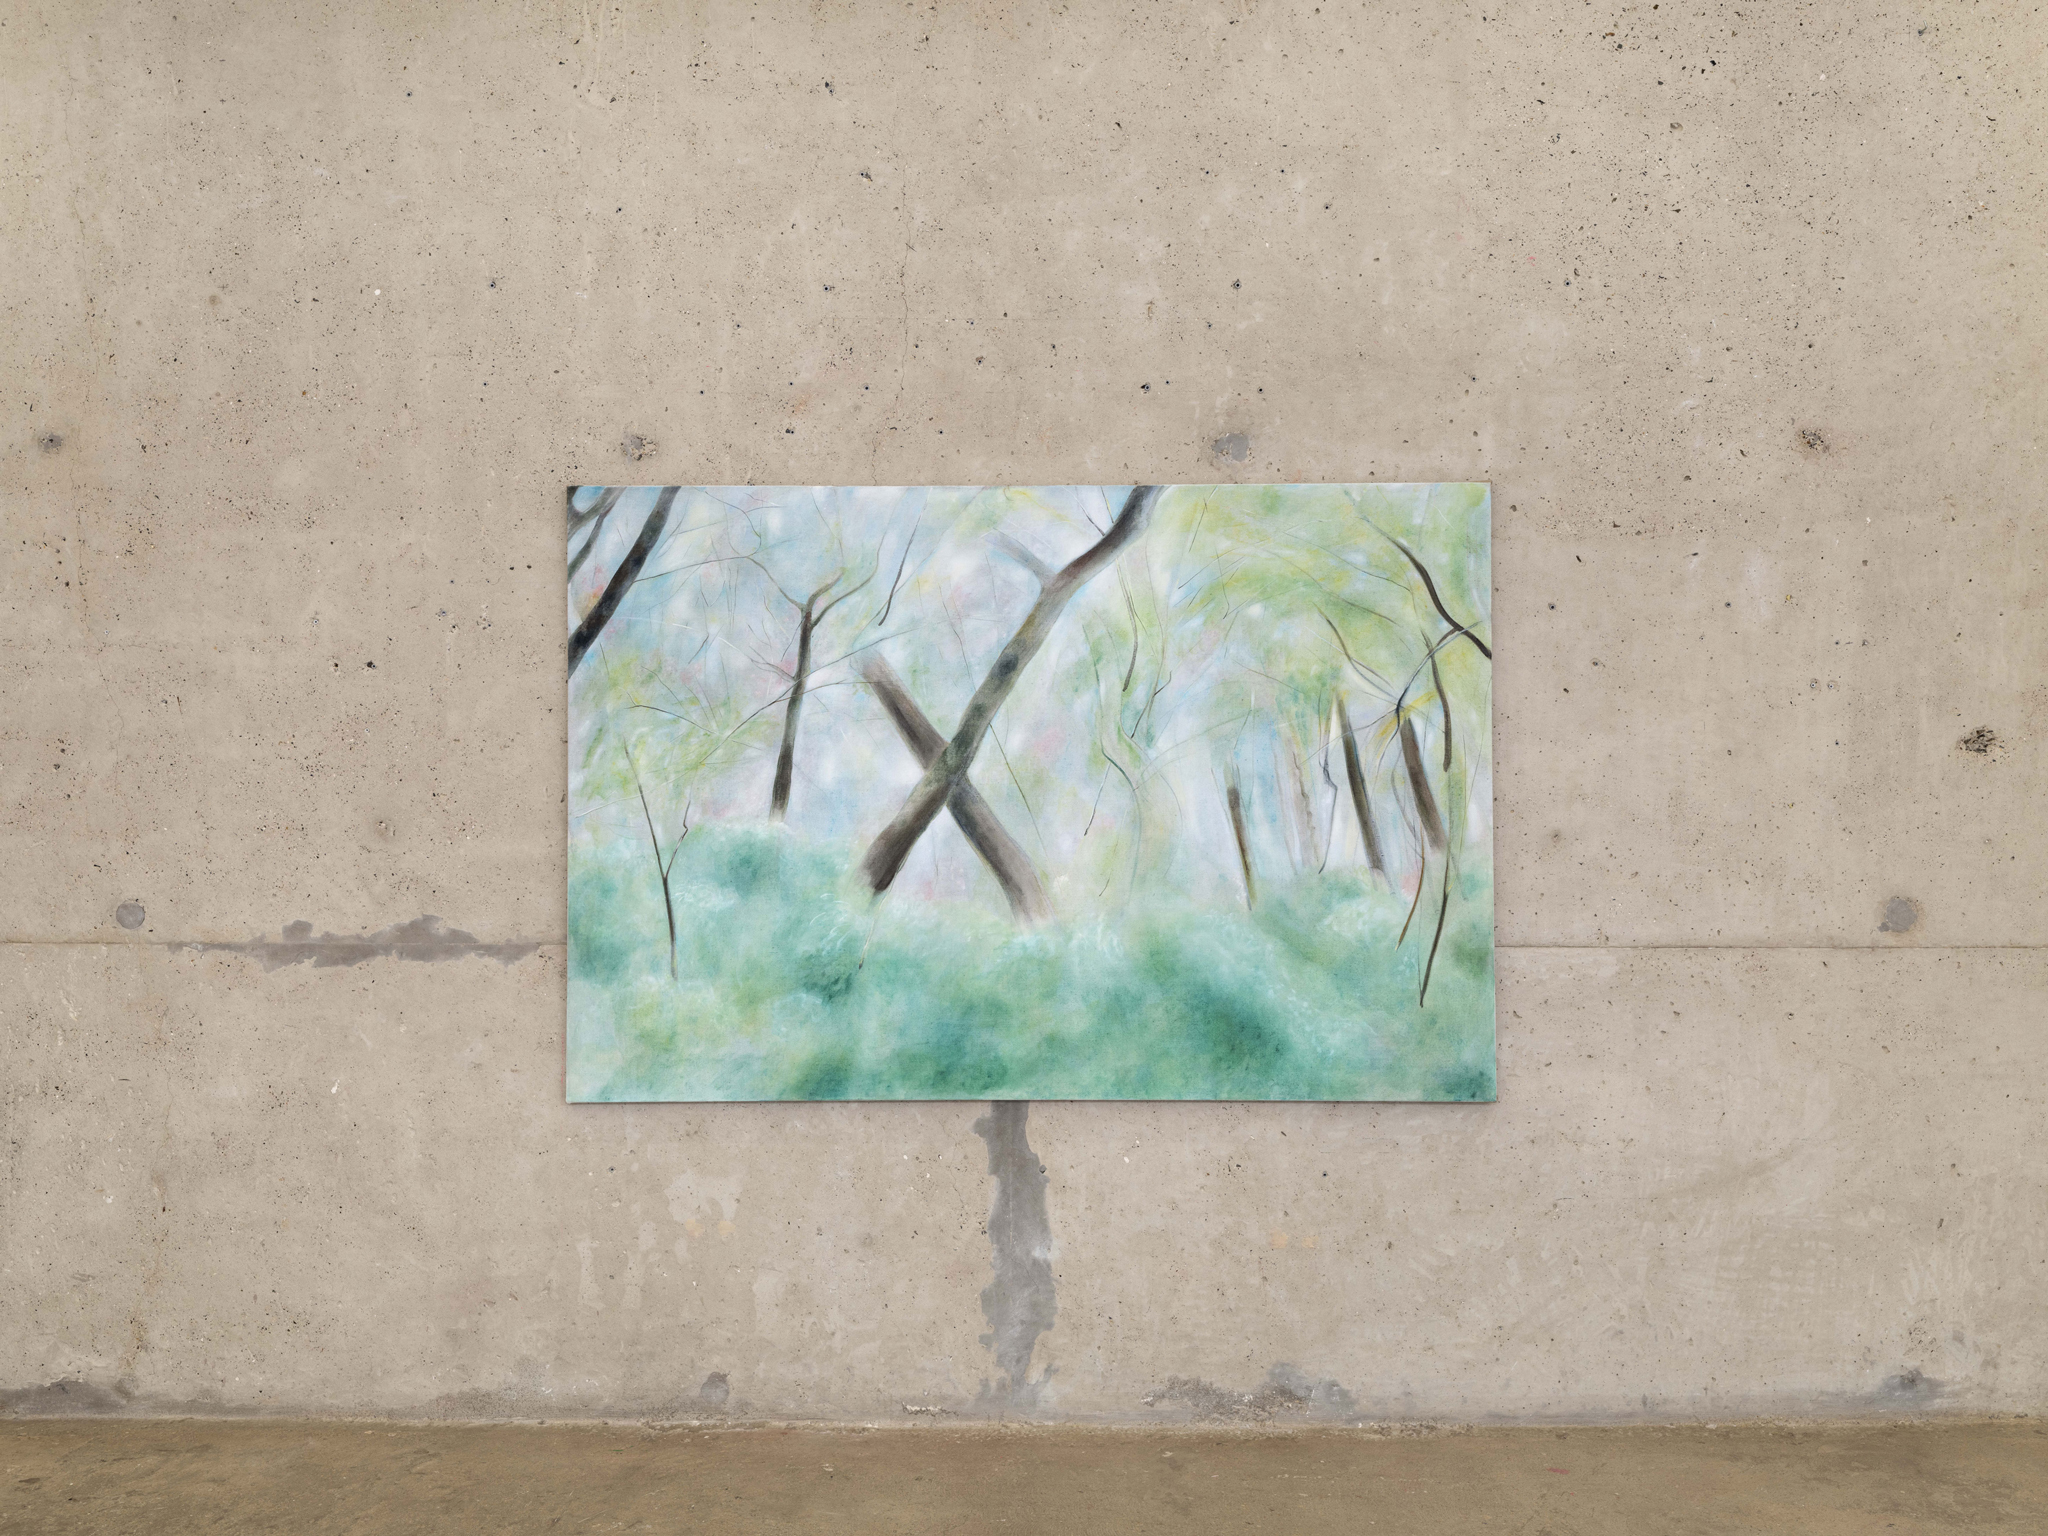 Nino Kapanadze, The cruellest month, 2023, Oil on linen, 130 × 195 cm. Courtesy of the artist and Crèvecœur, Paris. Photo: Martin Argyroglo